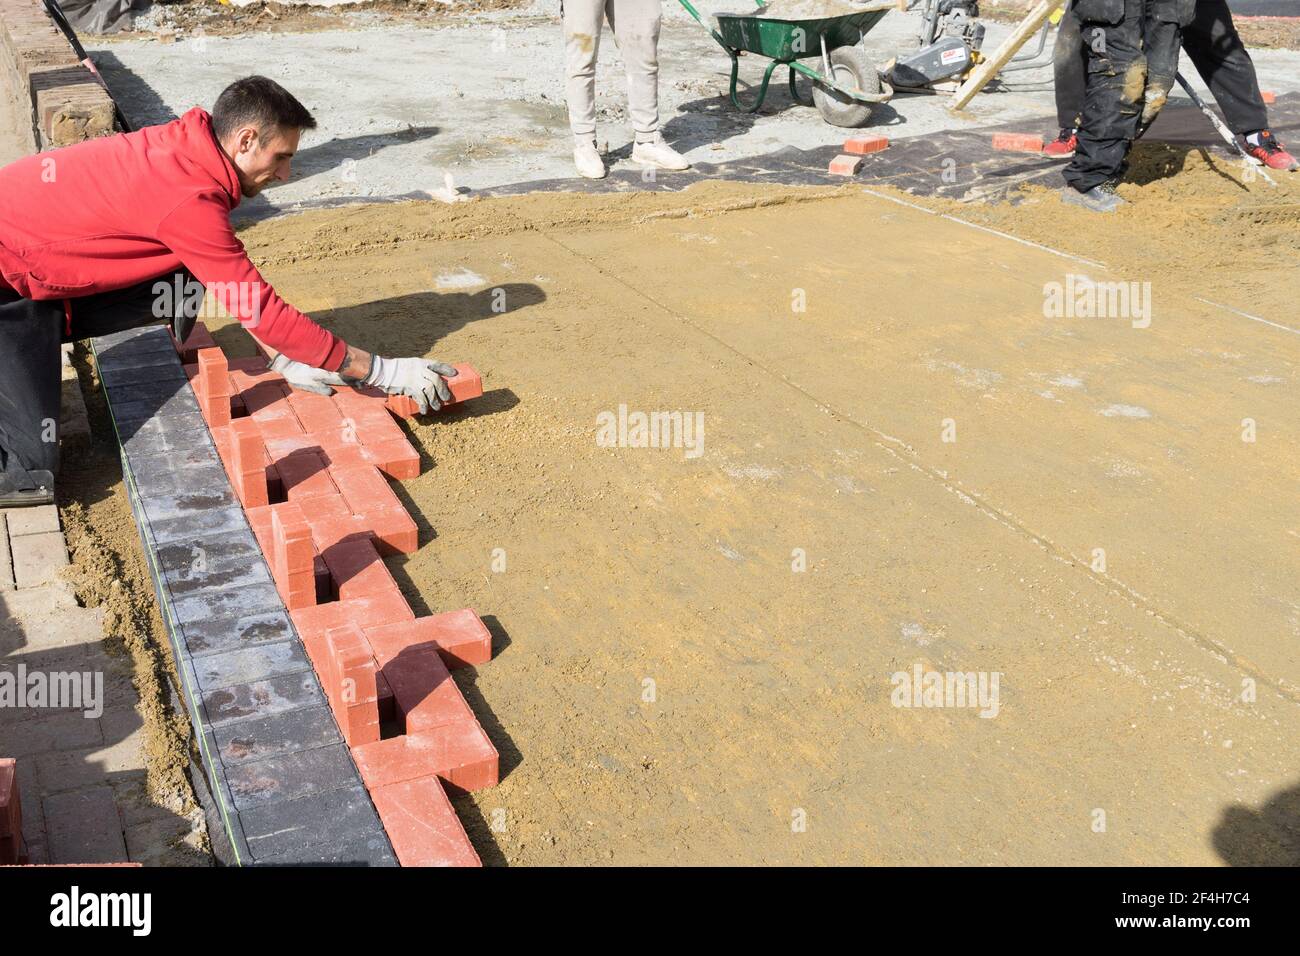 Fertiger legt erste Reihe von Pflastersteinen auf der Basis Sandschicht unter einem sonnigen Tag, England Stockfoto